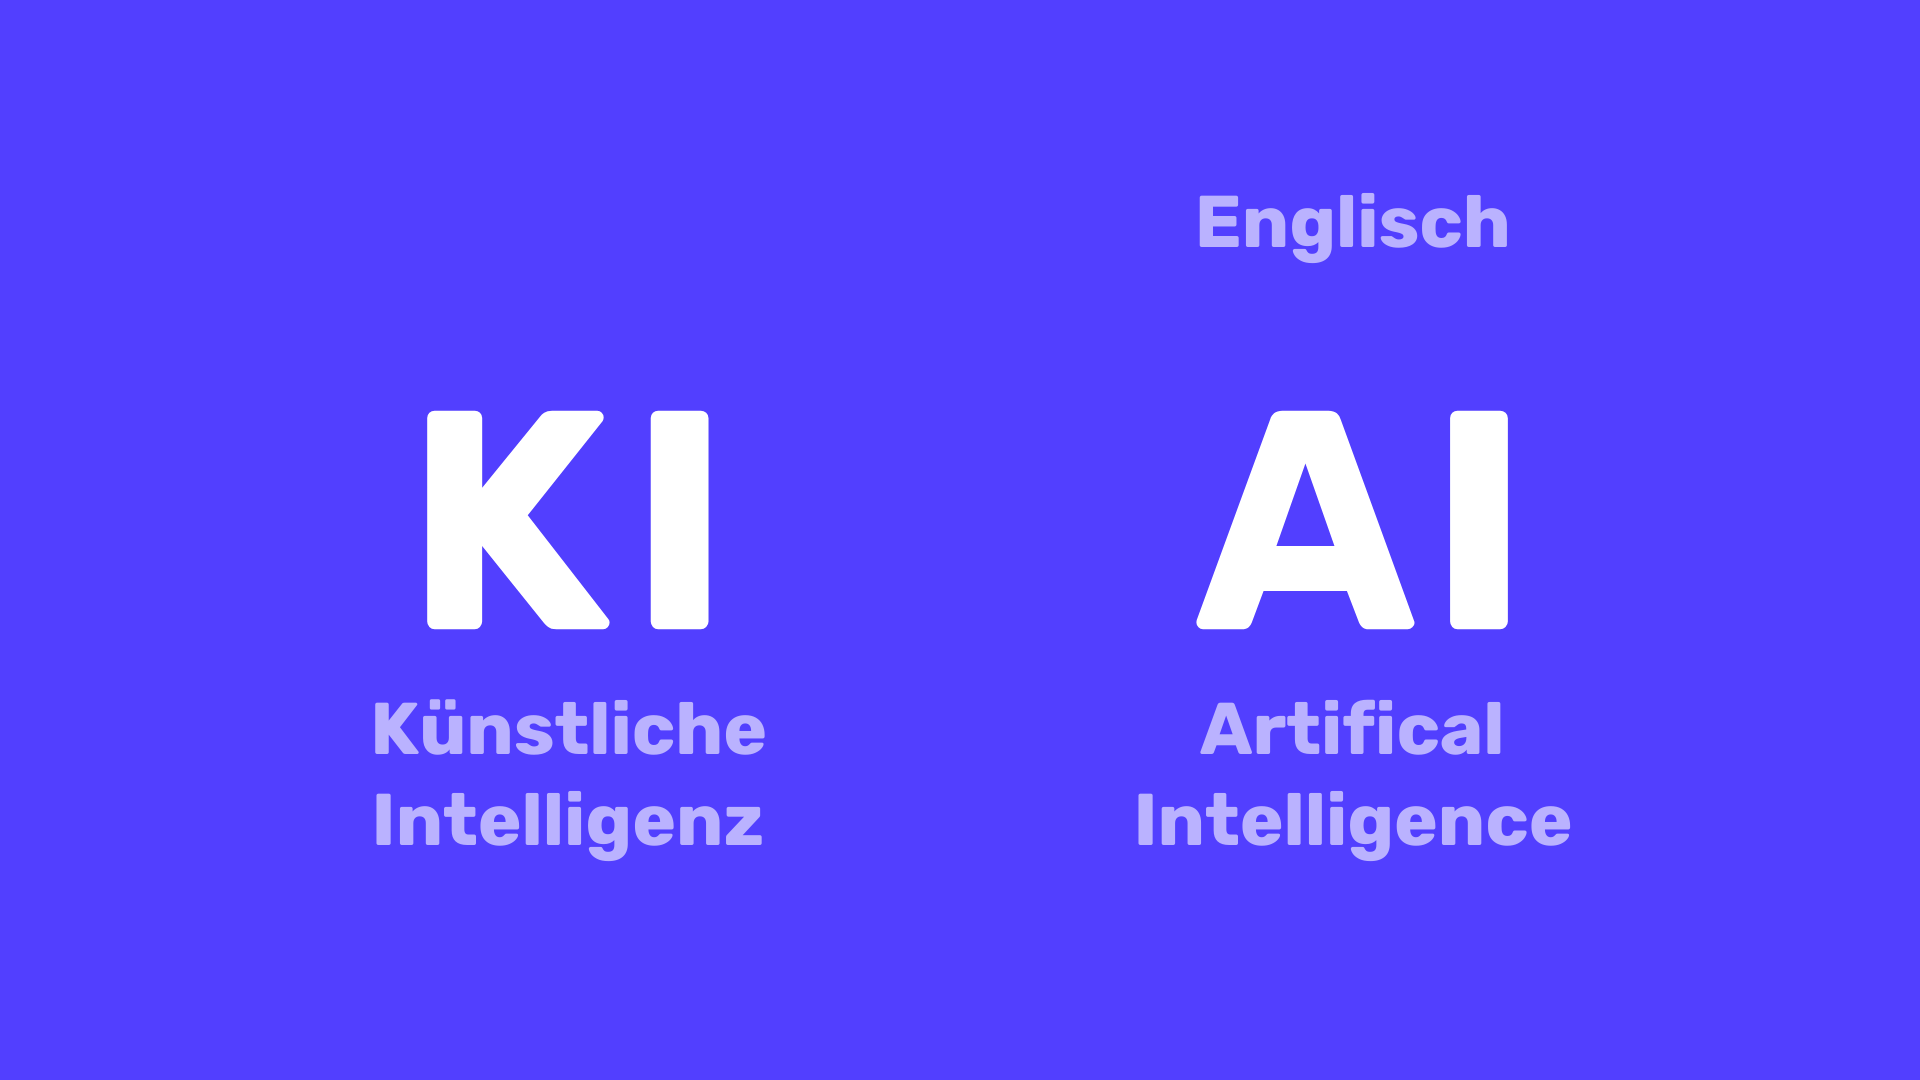 Die Abkürzung "KI" steht in großen Buchstaben auf der linken Seite. Darunter steht die Übersetzung "Künstliche Intelligenz". Auf der rechten Seite steht die Abkürzung "AI", darüber steht "Englisch" und darunter steht "Artificial Intelligence".